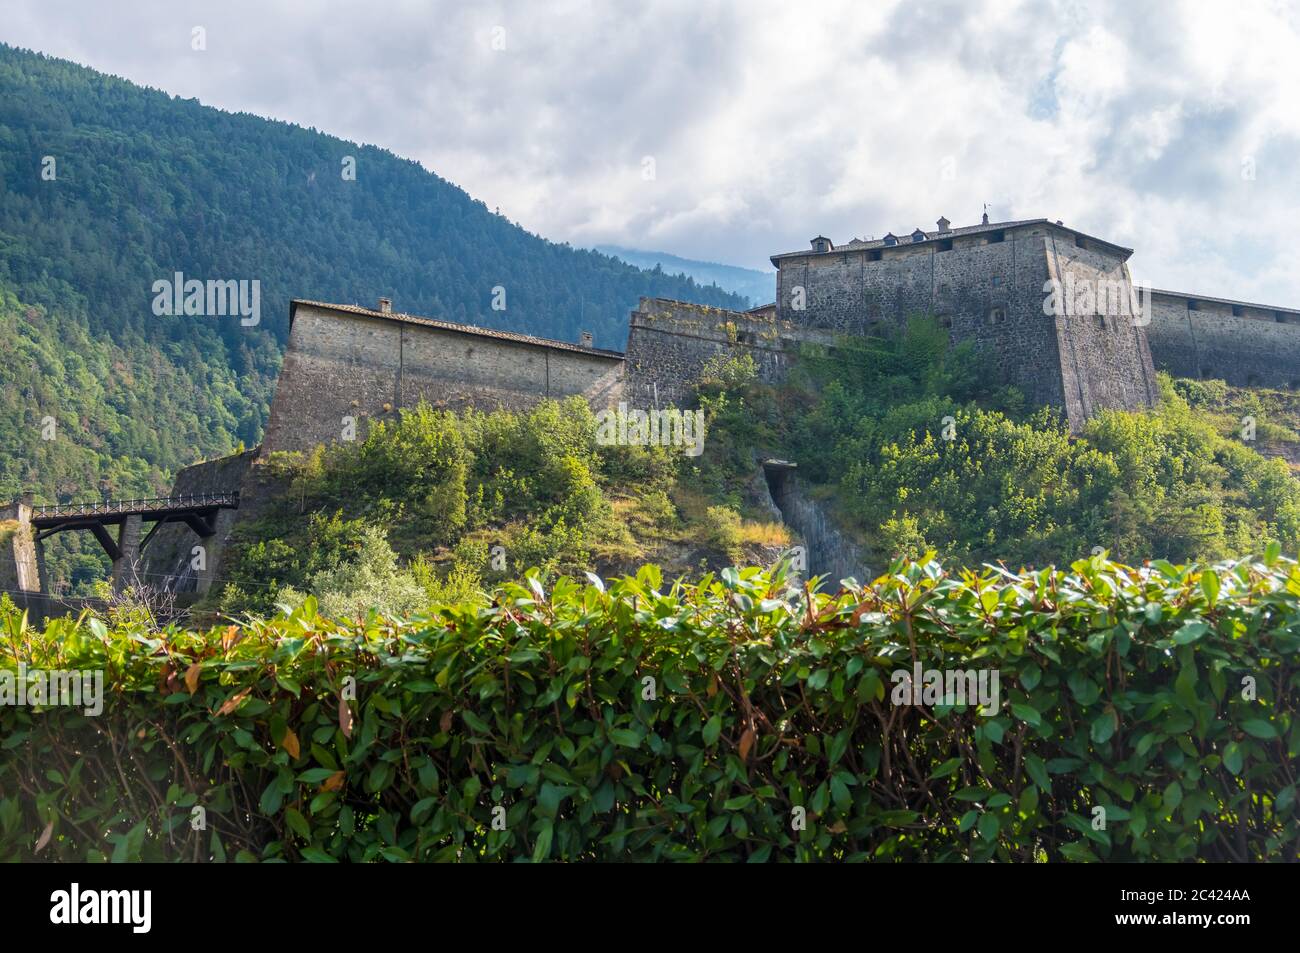 Exilles, Italie - 21 août 2019 : le fort Exilles est un complexe fortifié de la vallée de Susa, ville métropolitaine de Turin, Piémont, Italie du Nord Banque D'Images